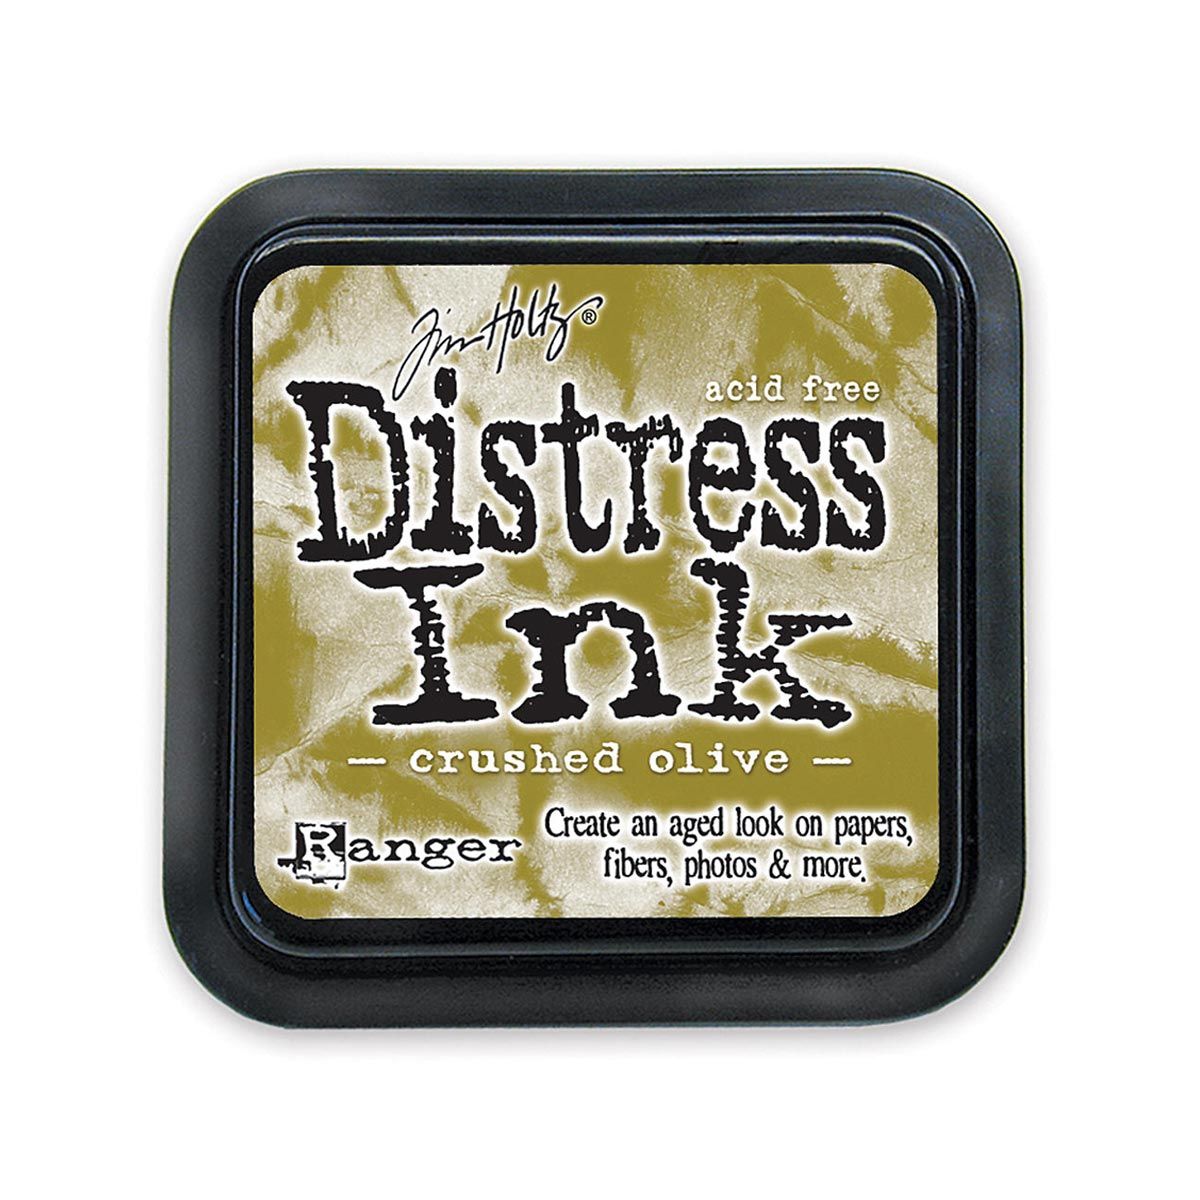 Tim Holtz Mini Distress Ink Pad Crushed Olive 1x1 inch